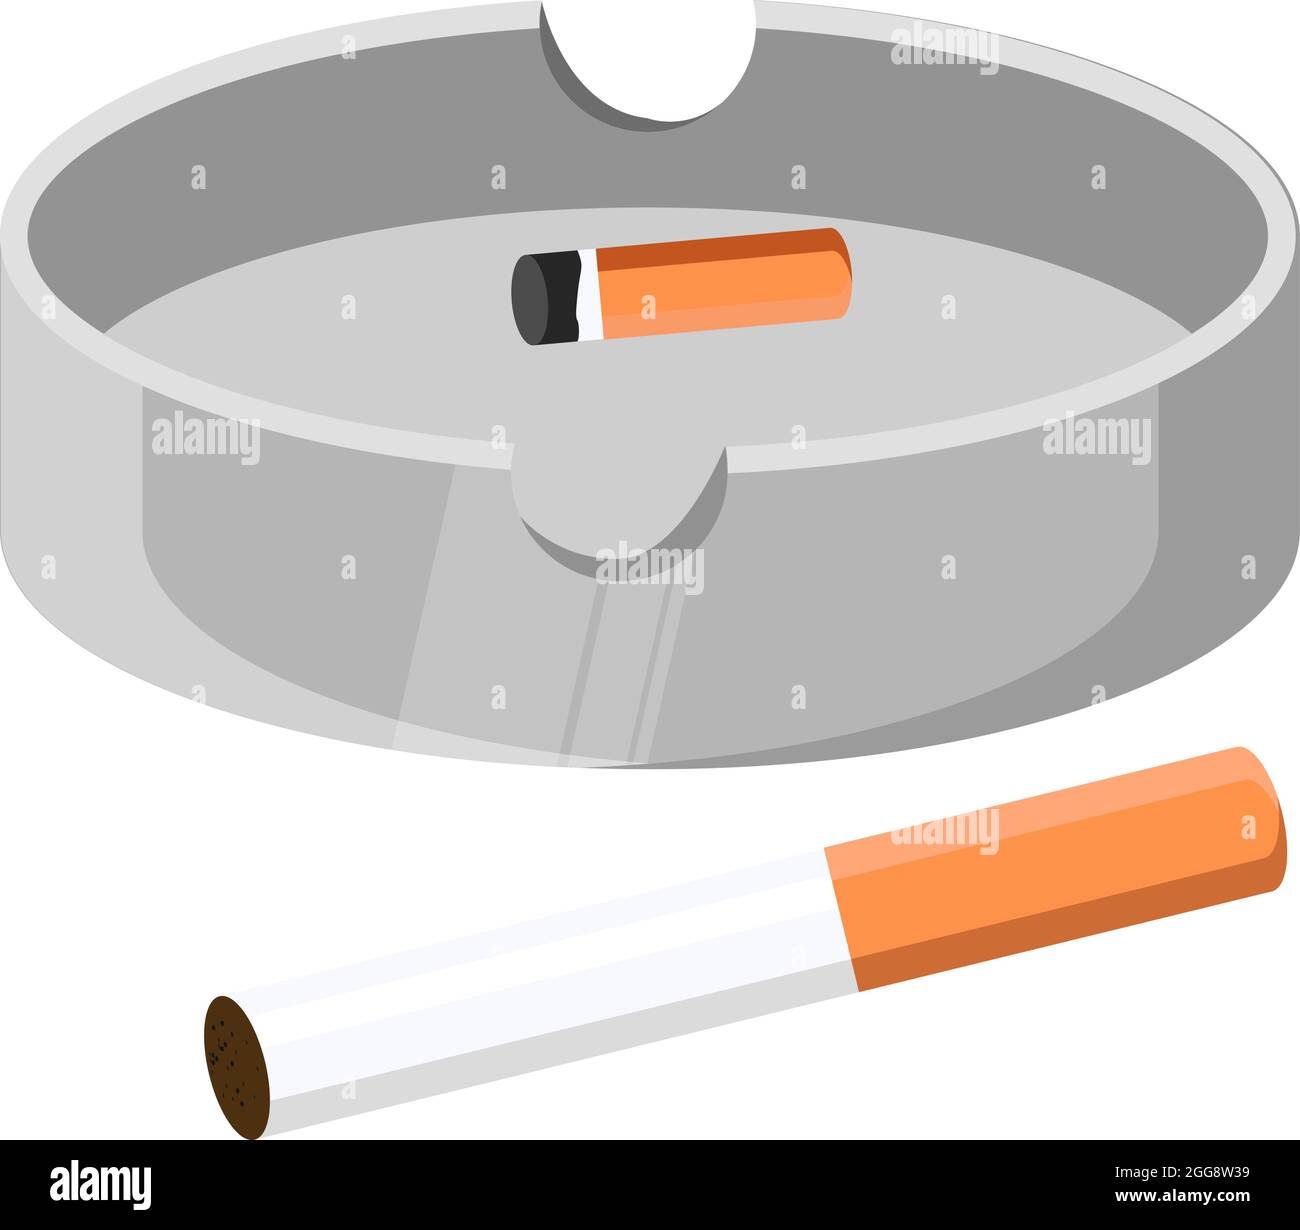 Zigarette im Aschenbecher, Abbildung, Vektor auf weißem Hintergrund Stock- Vektorgrafik - Alamy